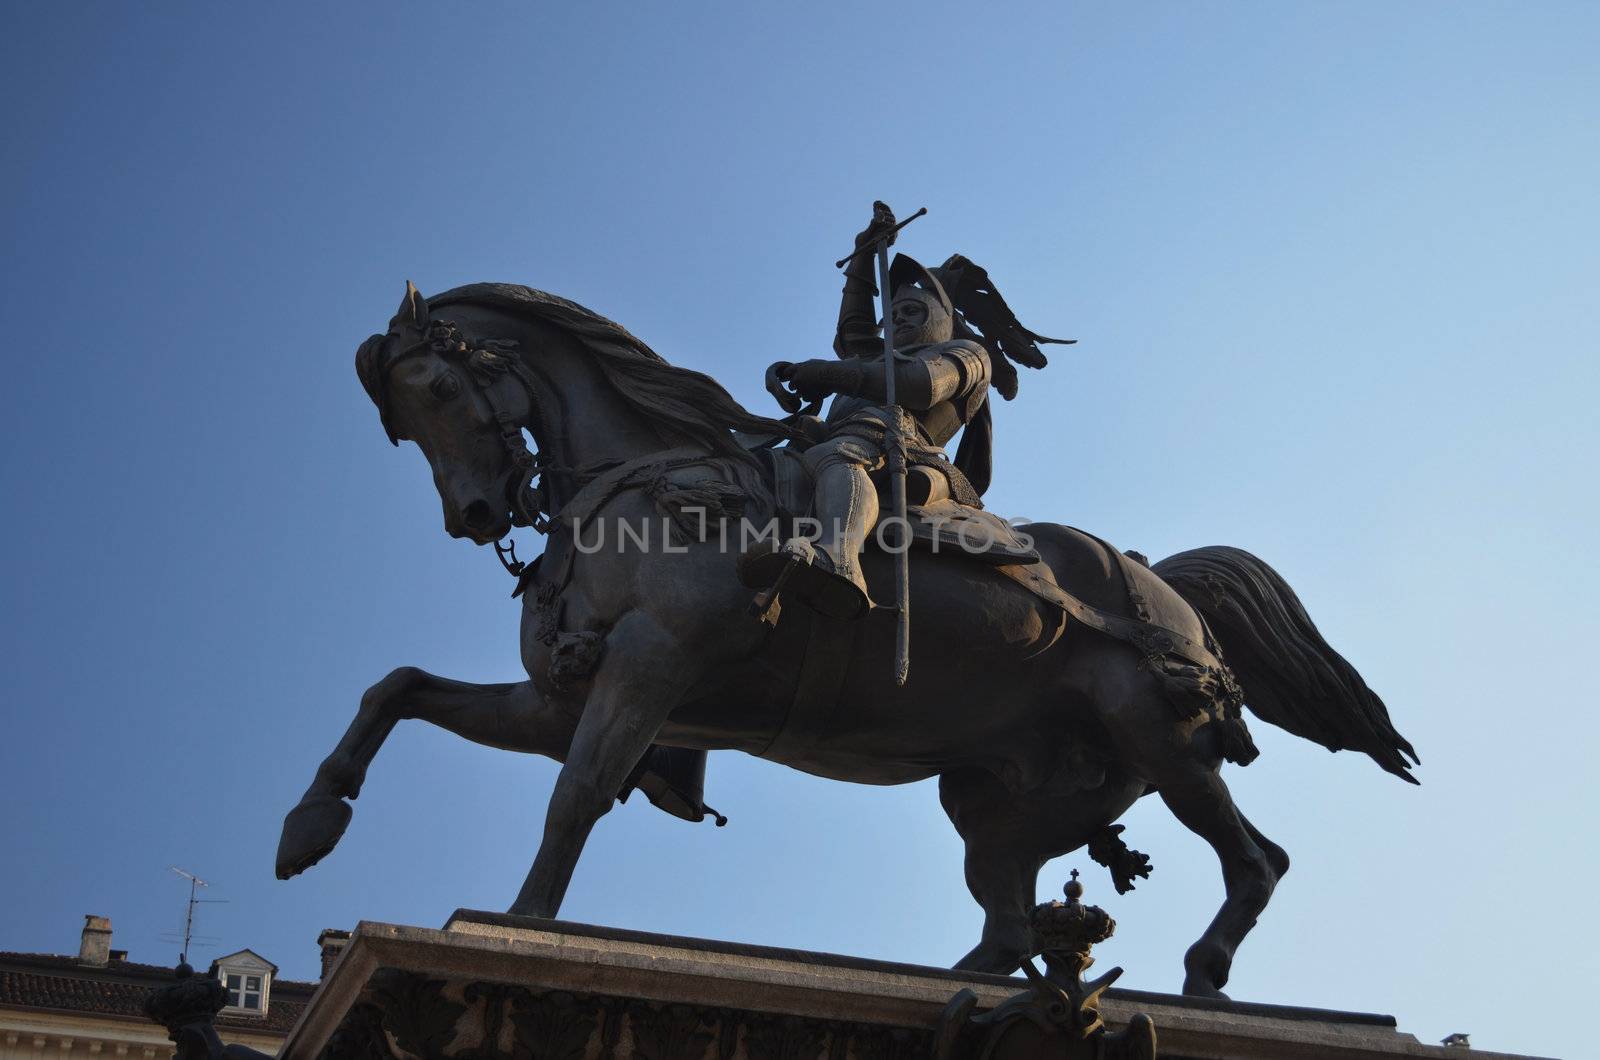 Statue of Emanule Filiberto in Piazza San Carlo in Turin, Italy